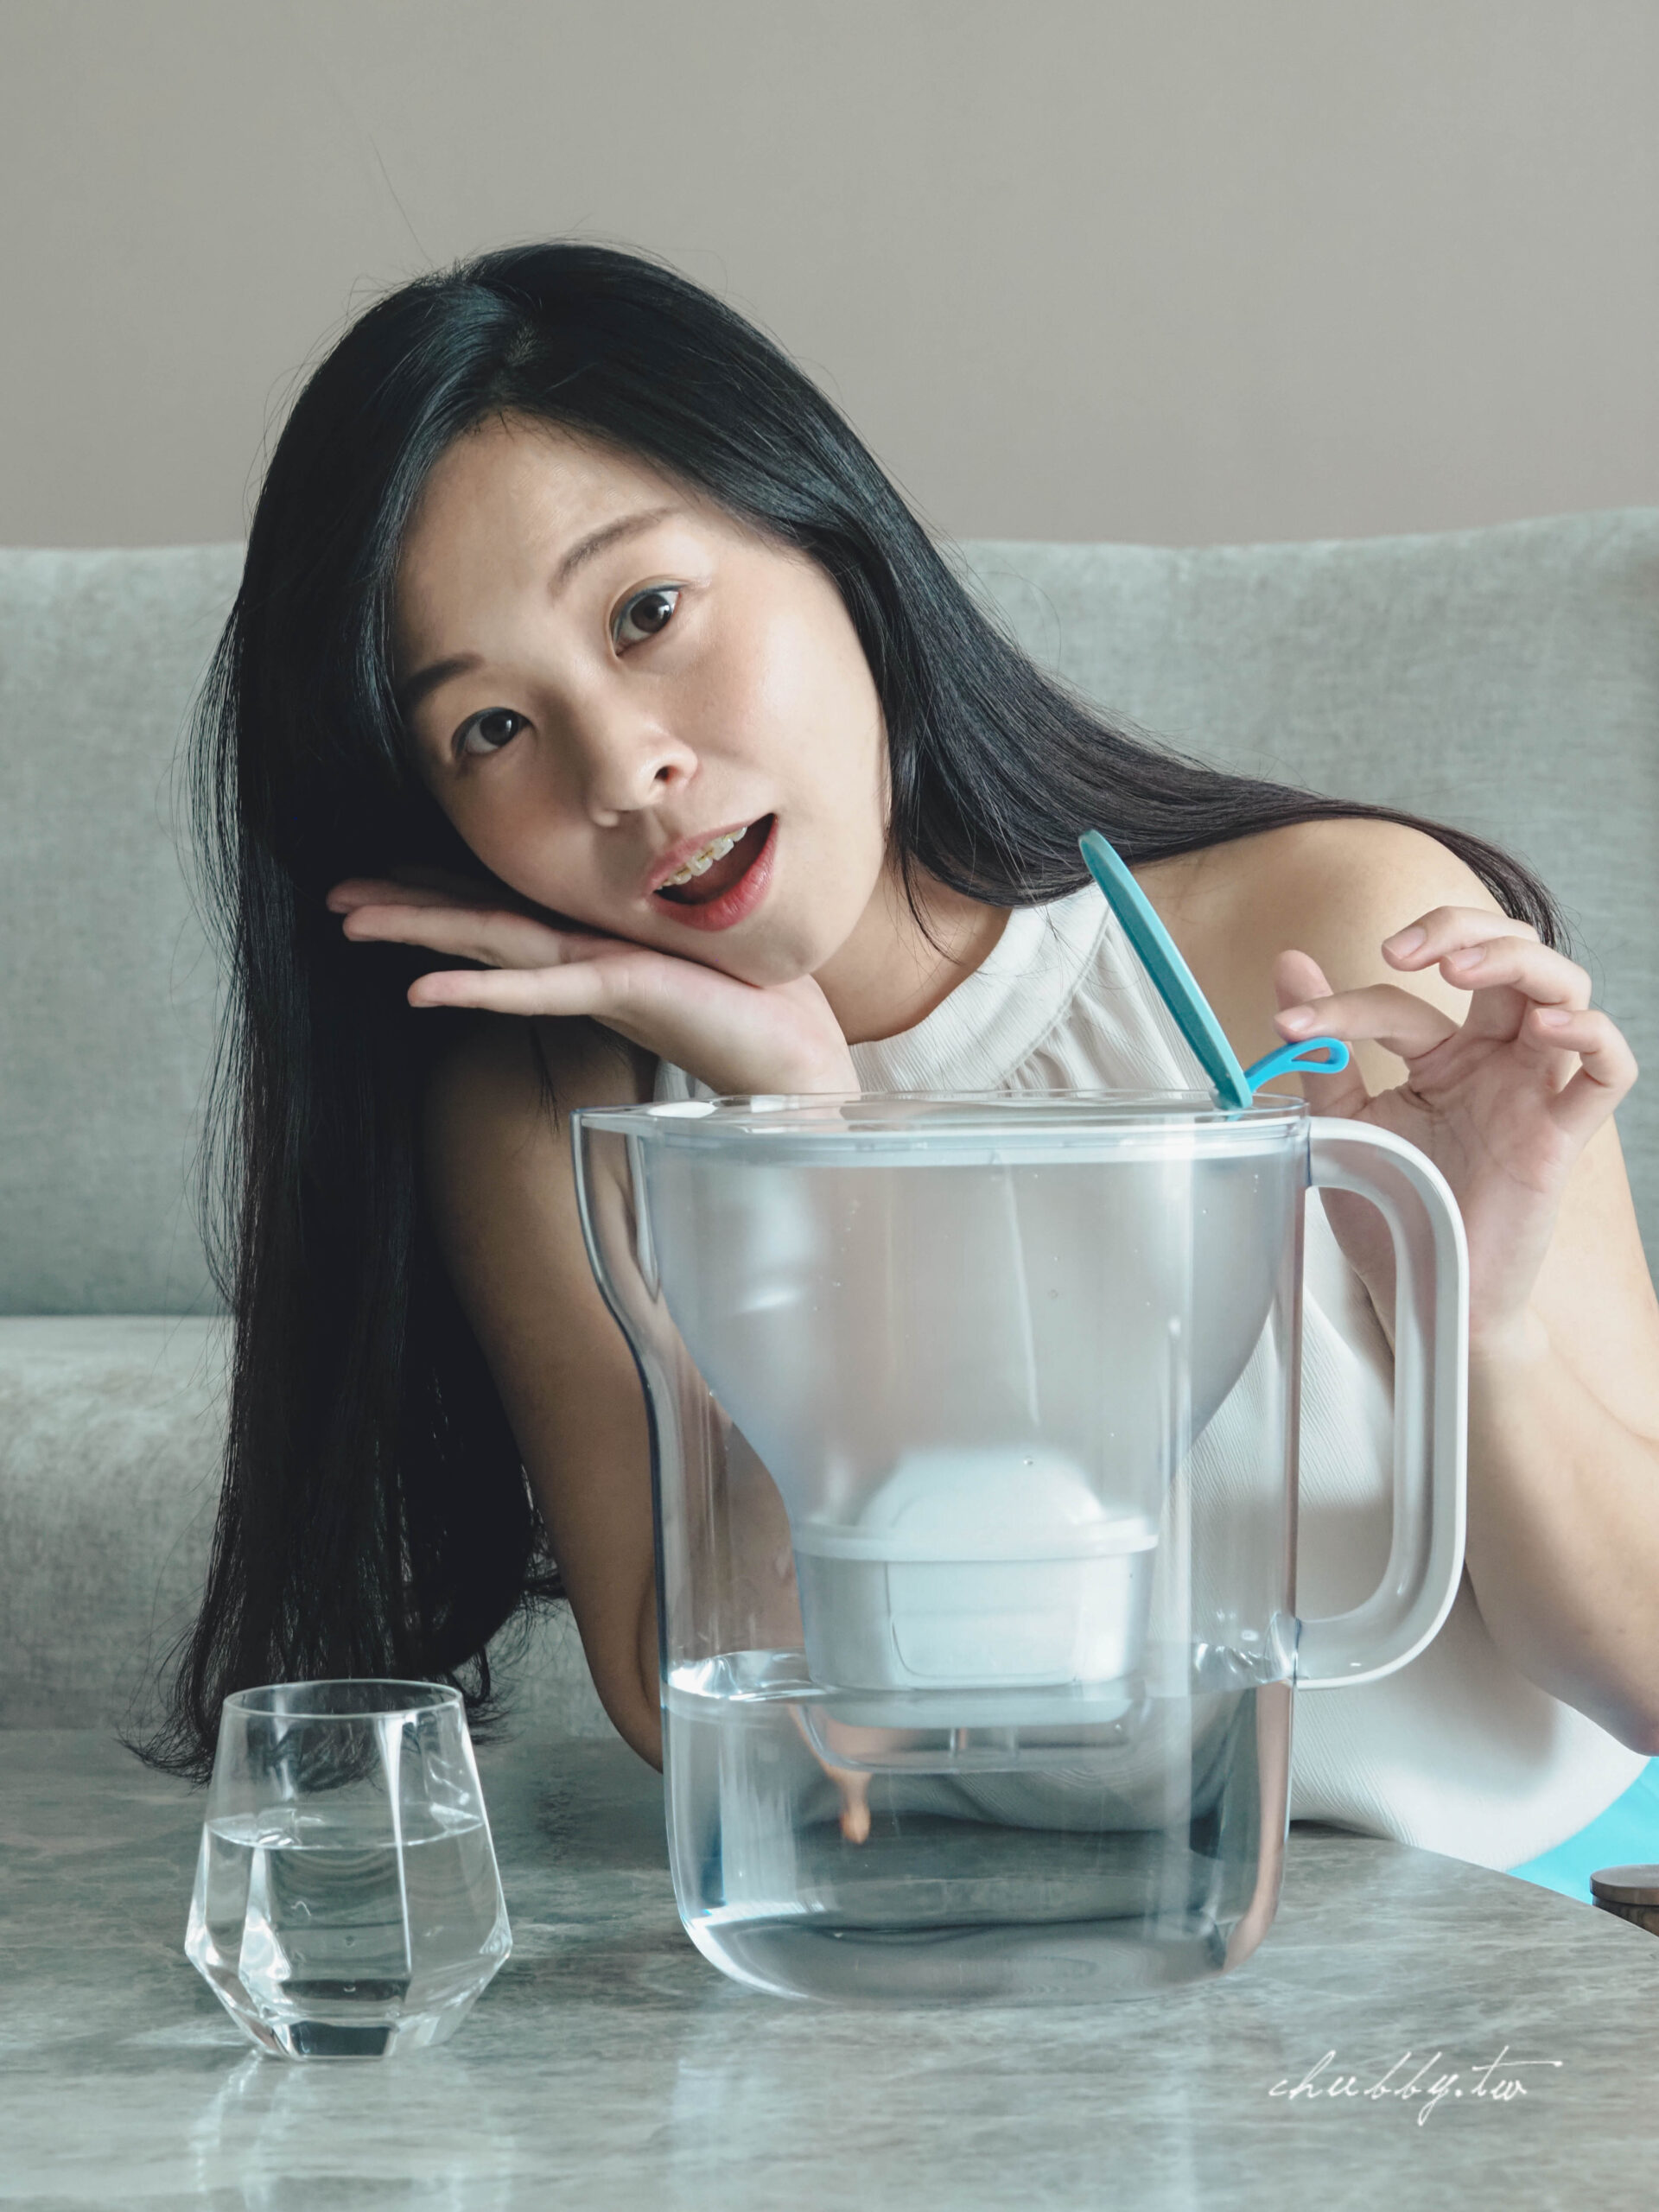 BRITA Style純淨濾水壺開箱│換季乾燥要多喝水，你的水喝對了嗎？